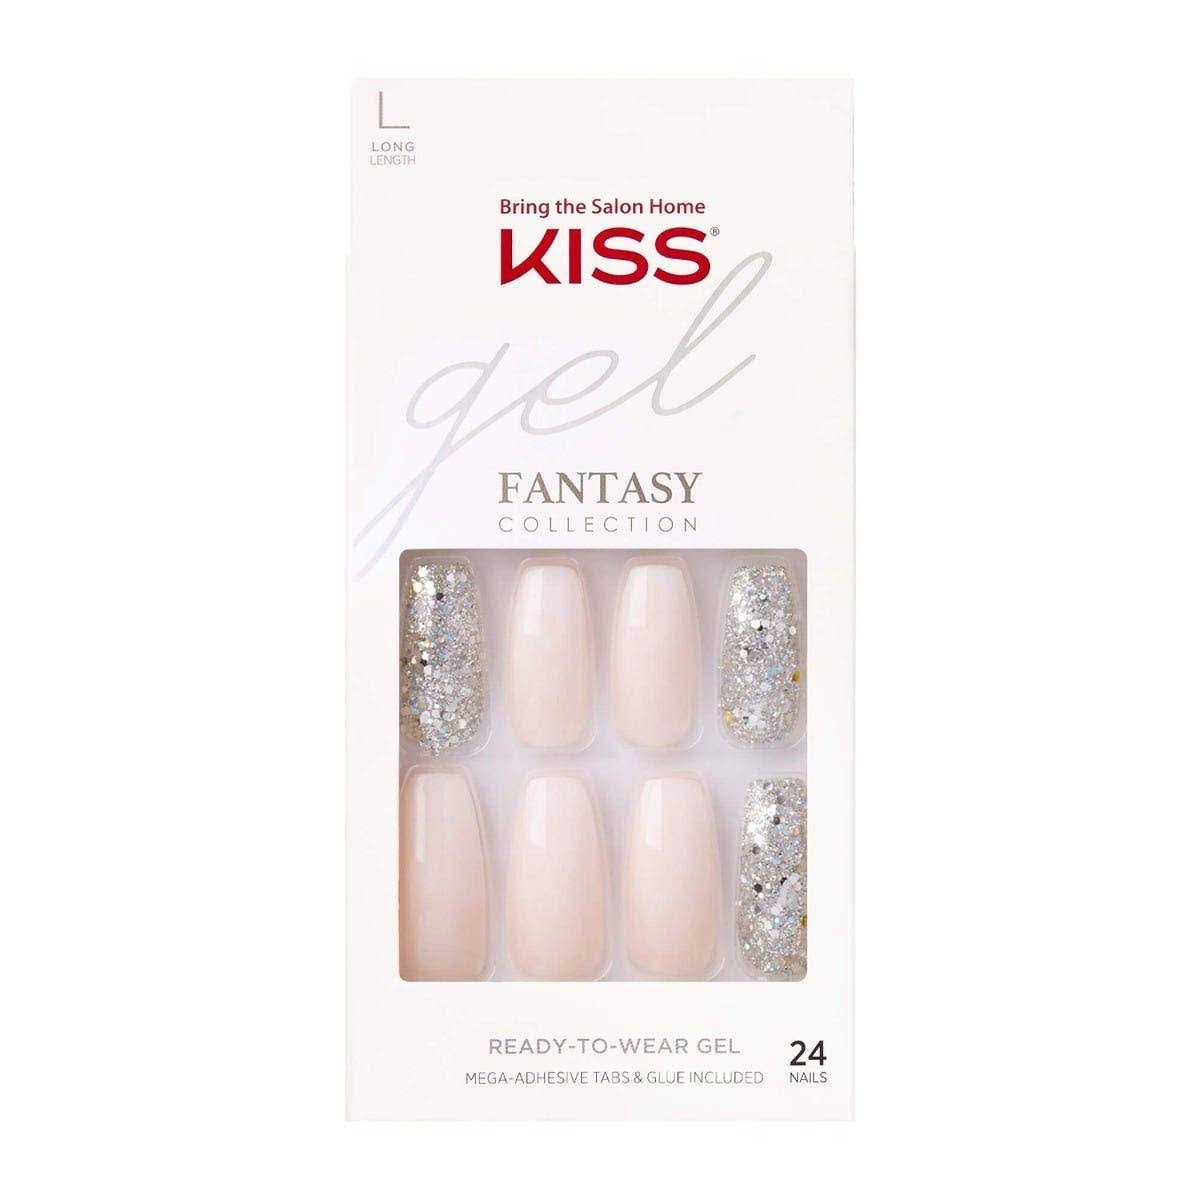 Kiss Gel Fantasy Collection Nails, Long Length - 24 nails